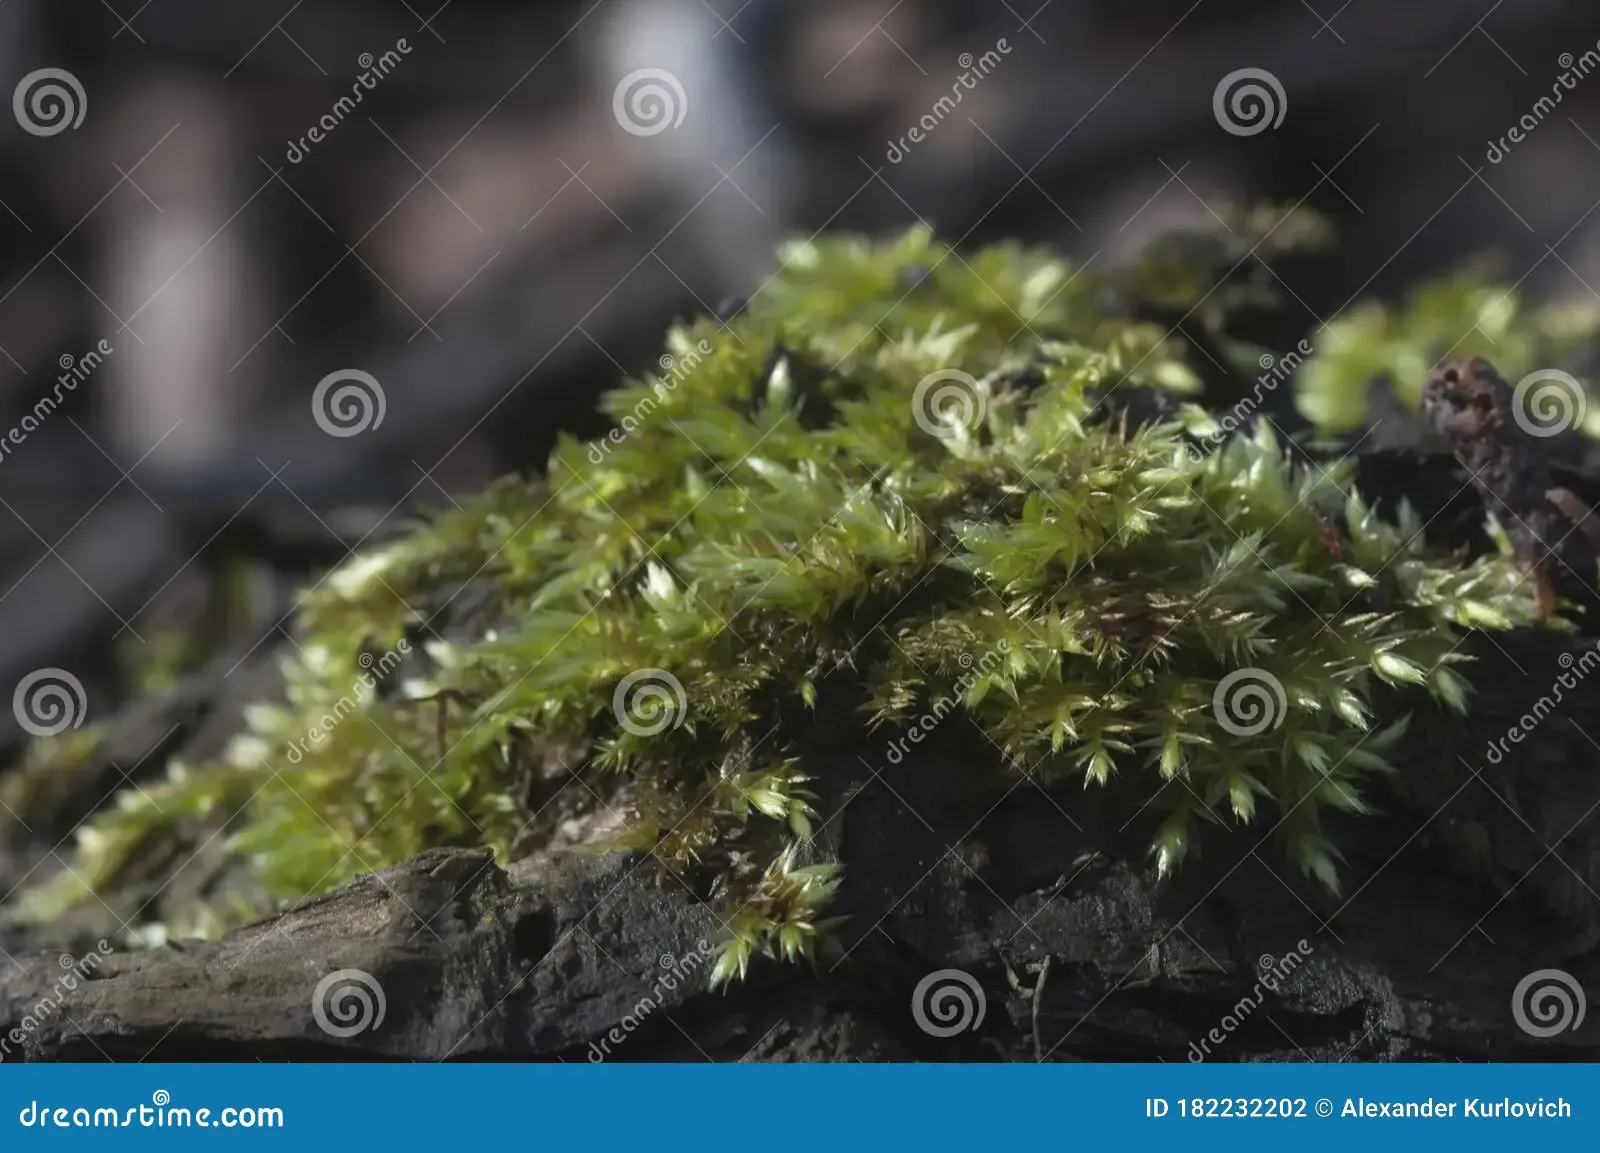 moss-hypnum-cupressiforme-close-up-shot-local-focus-182232202.jpg